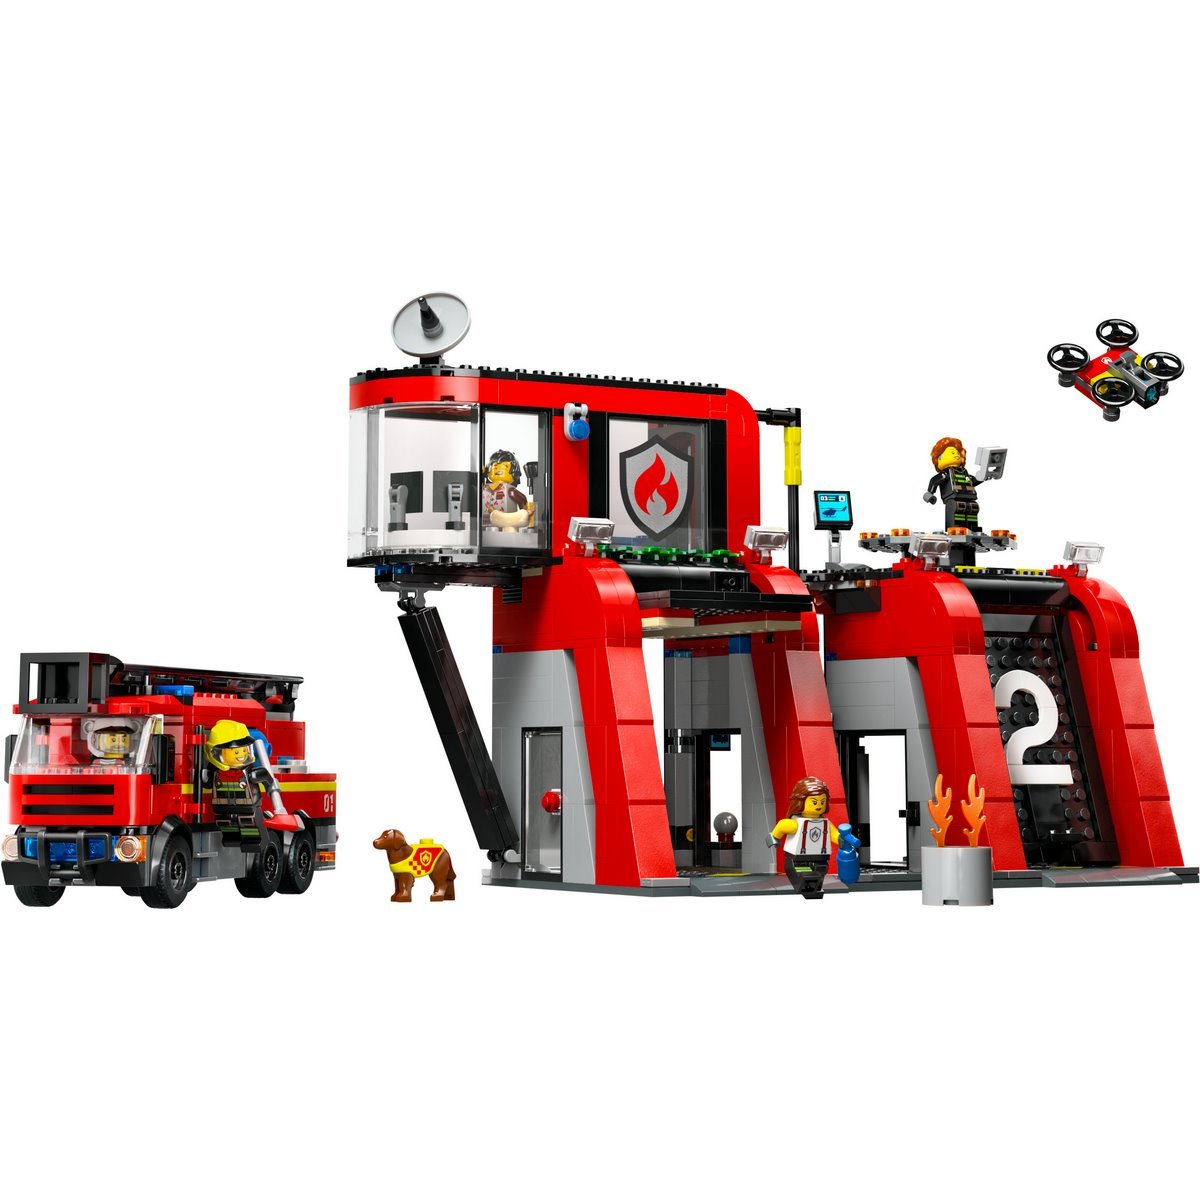 La caserne et le camion des pompiers Lego City 60375 - La Grande Récré